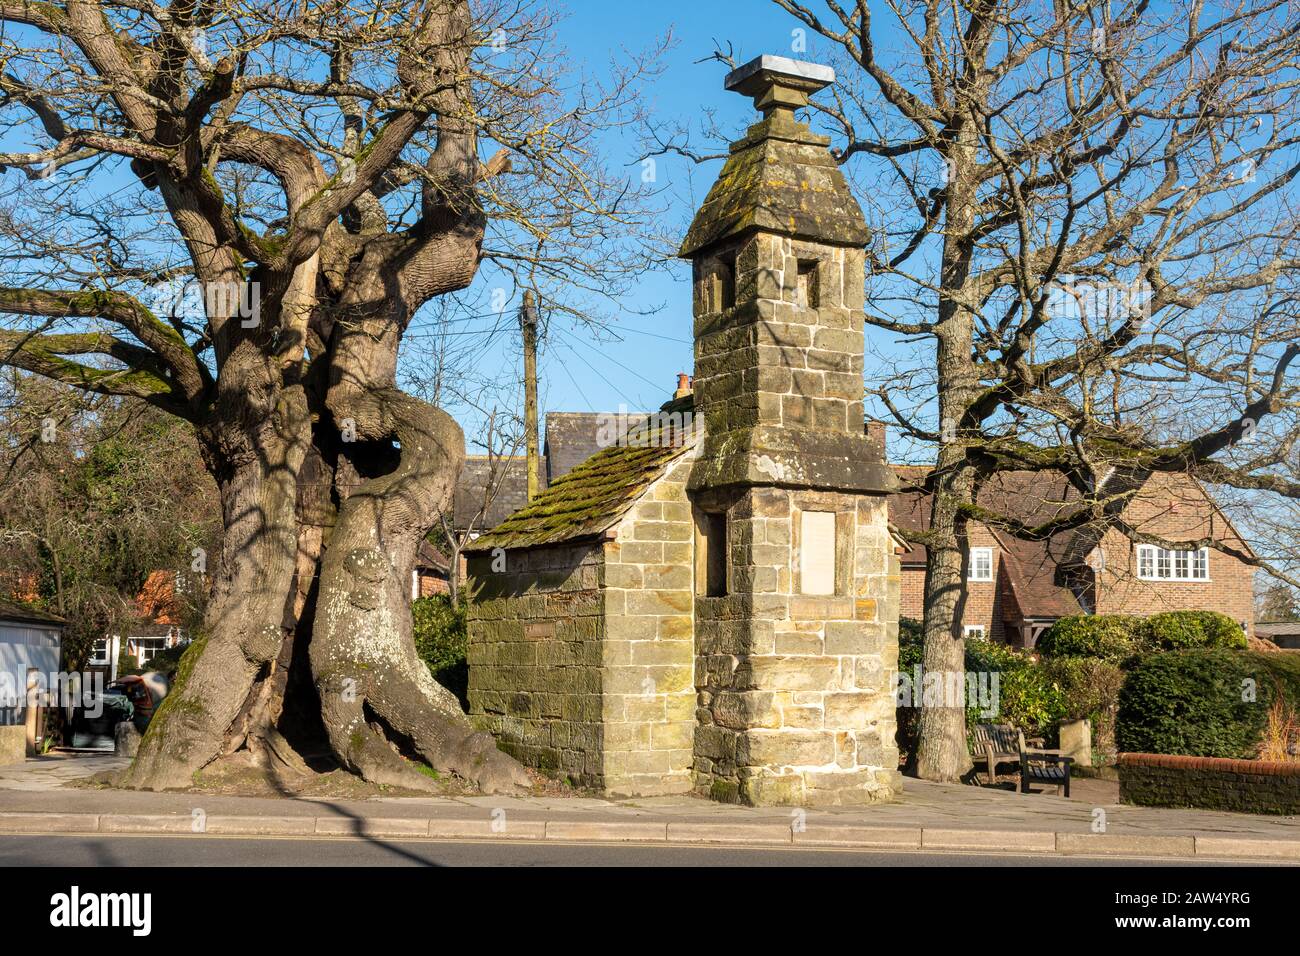 Lingfield Village in East Surrey, Großbritannien. Der Cage, eine Dorfschleuse, die zuletzt 1882 zur Aufnahme eines Wilderers genutzt wurde, wurde im Jahr 1773 errichtet. Stockfoto